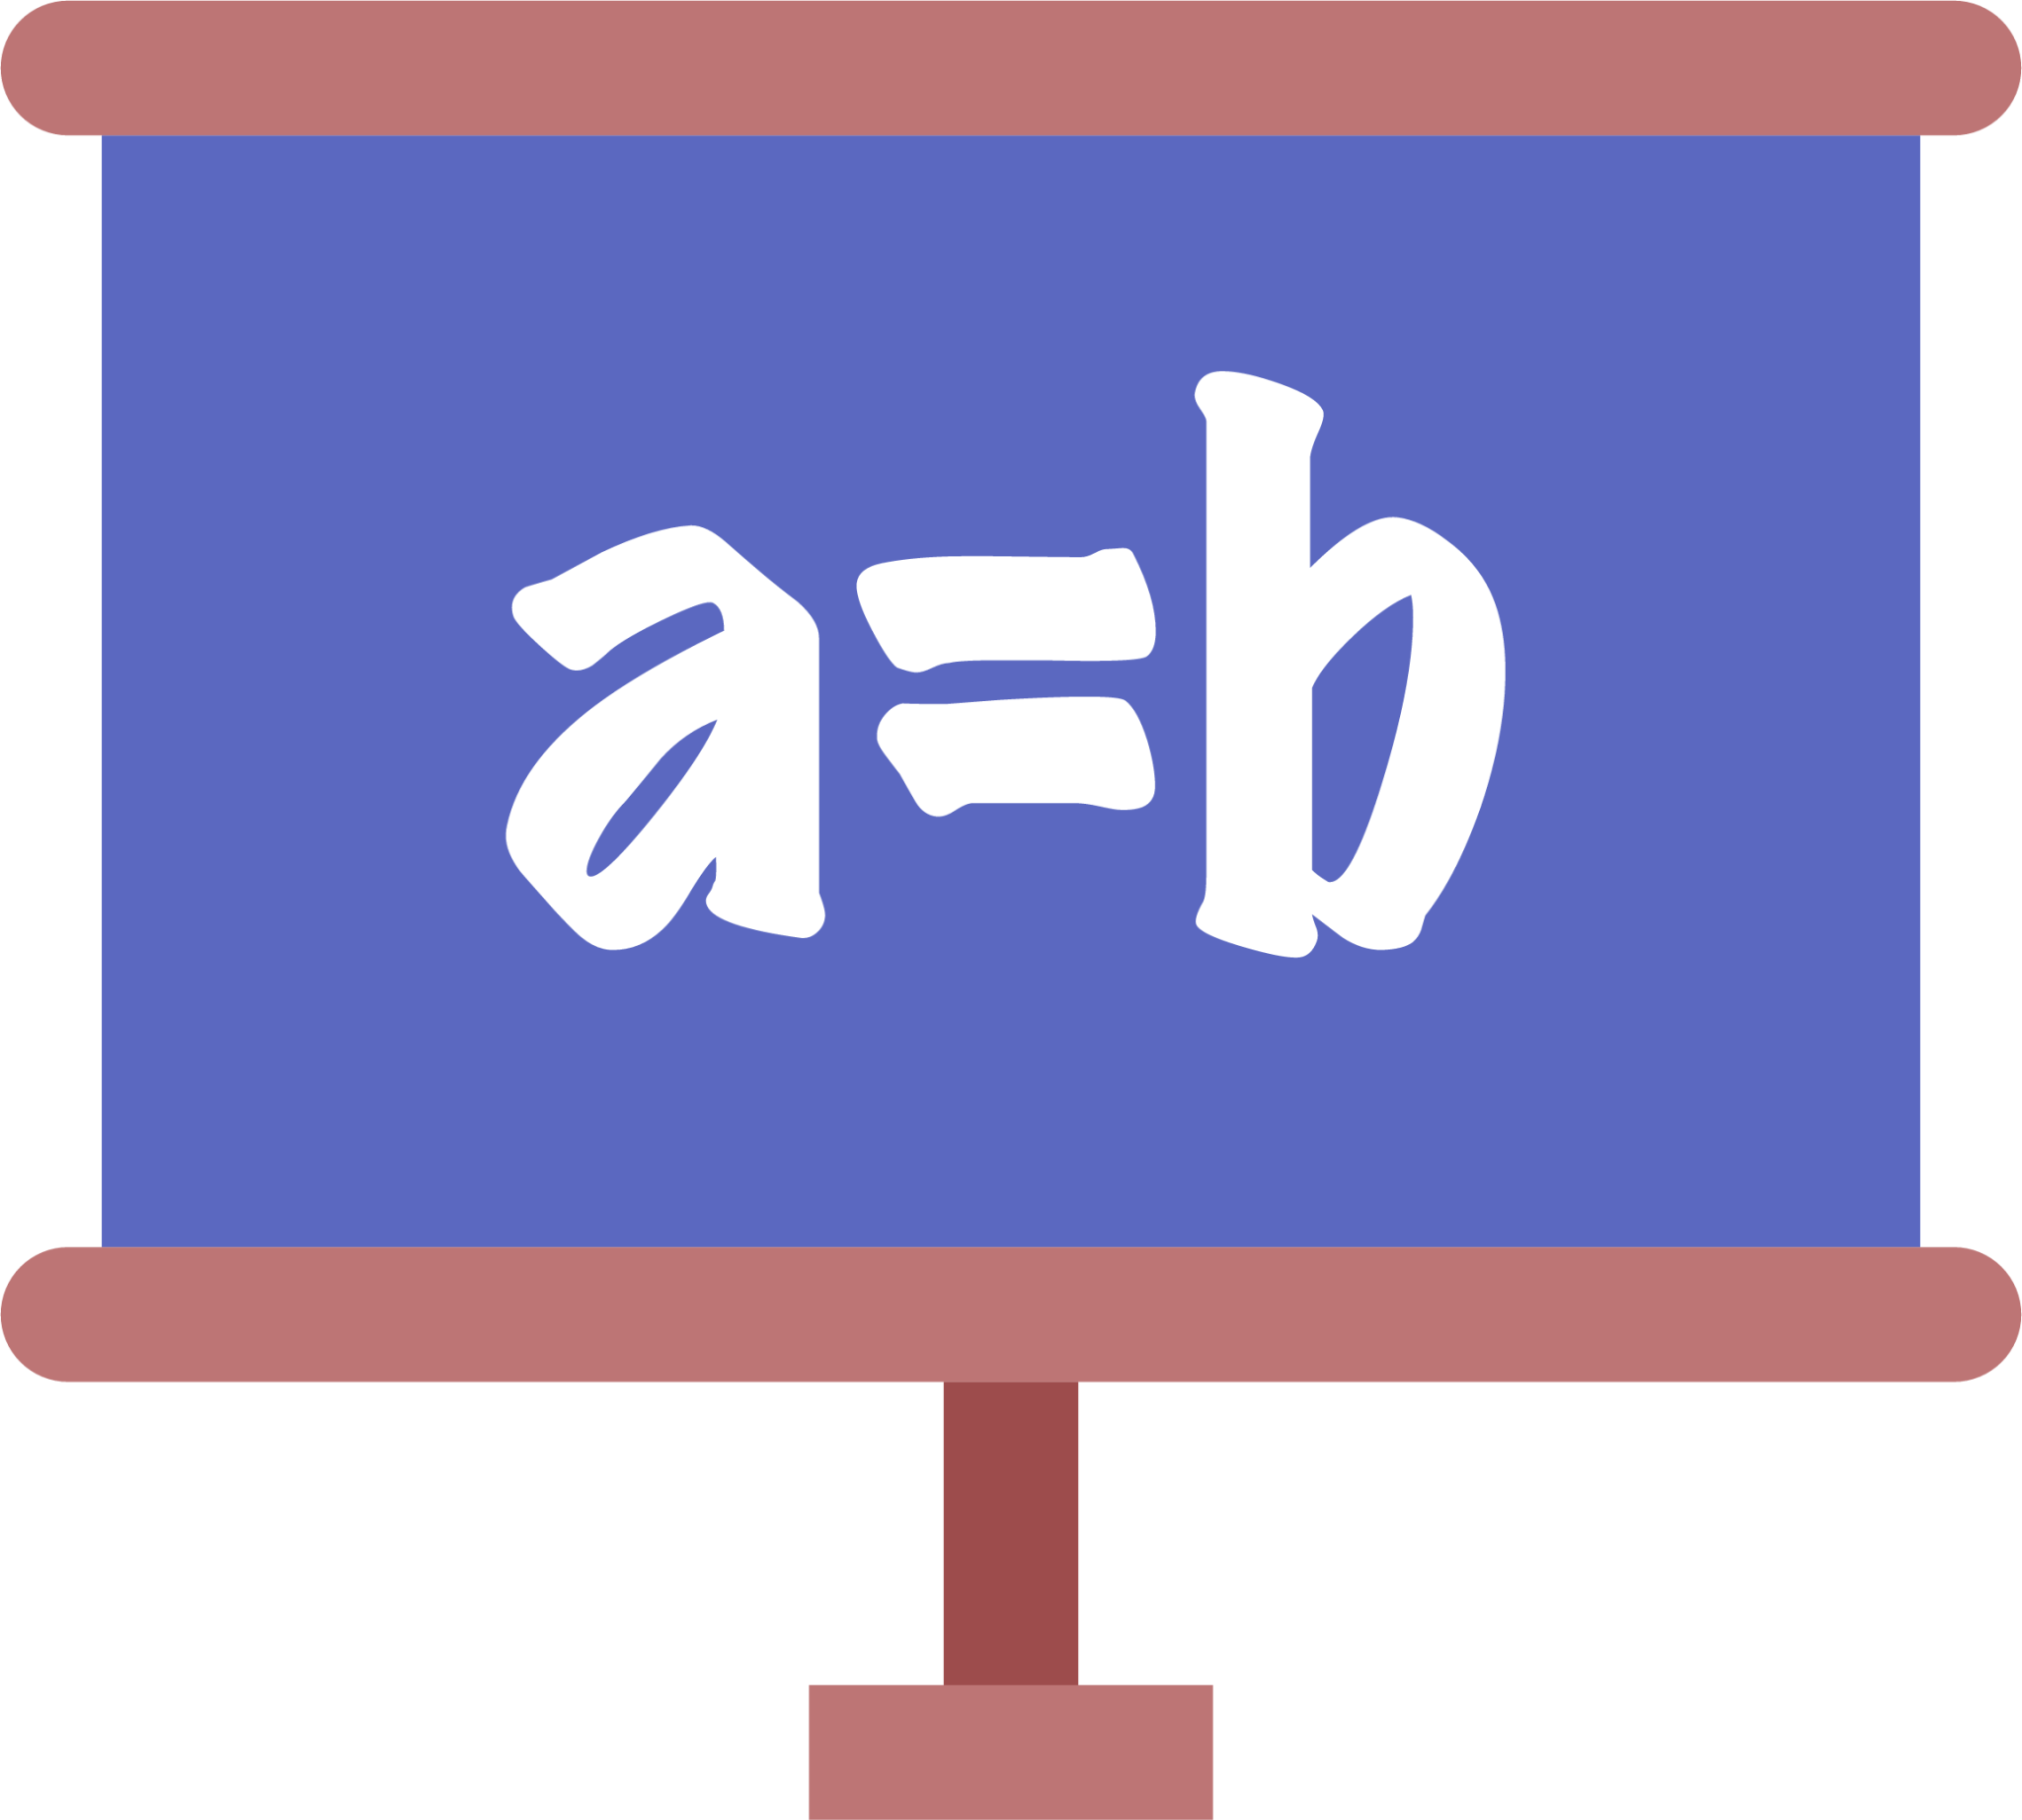 ecuation icon